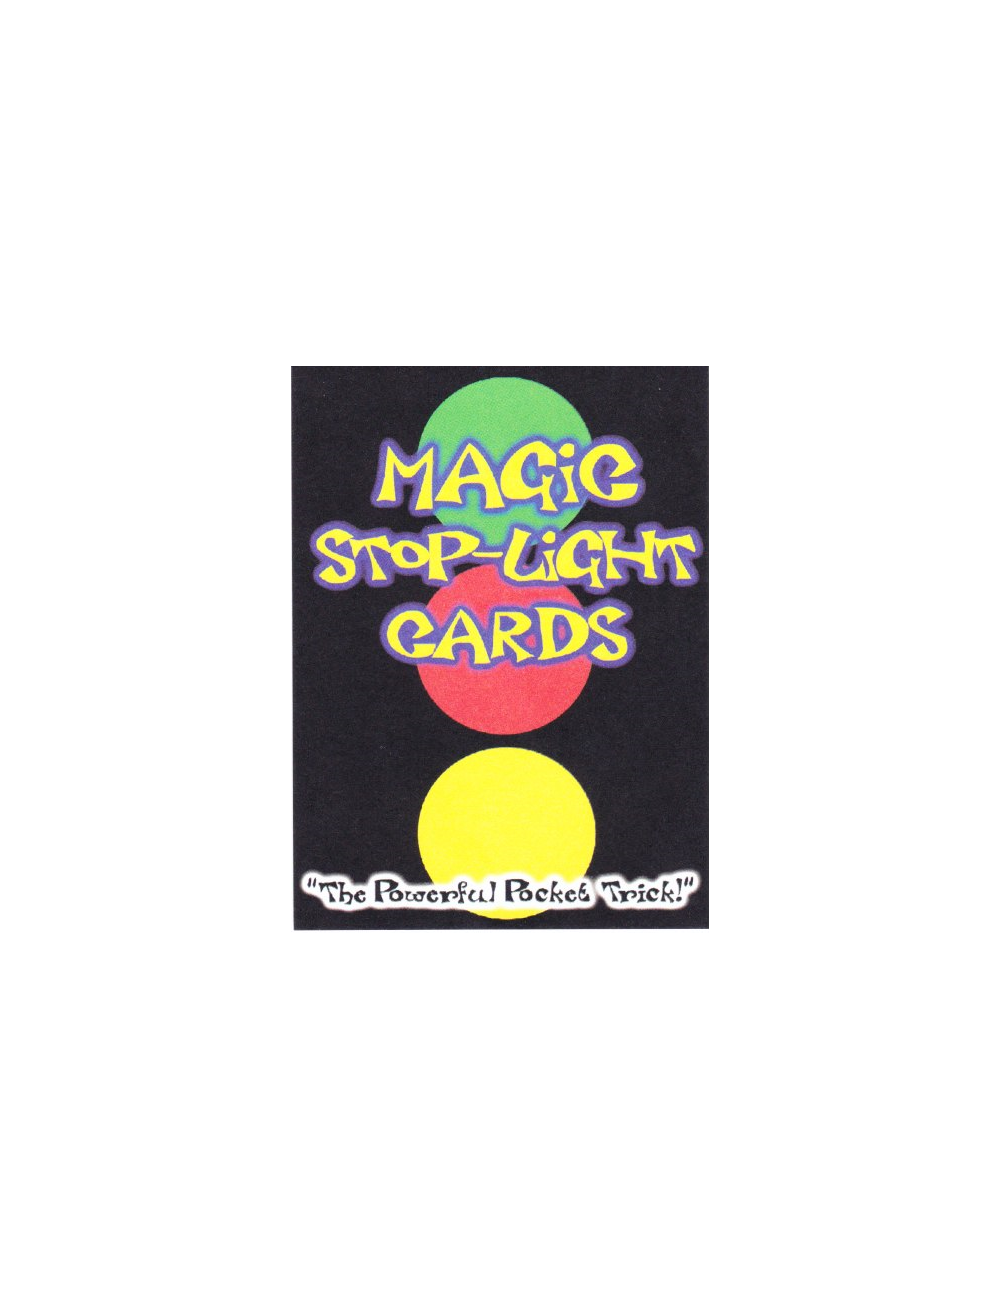 MAGIC STOP-LIGHT CARDS